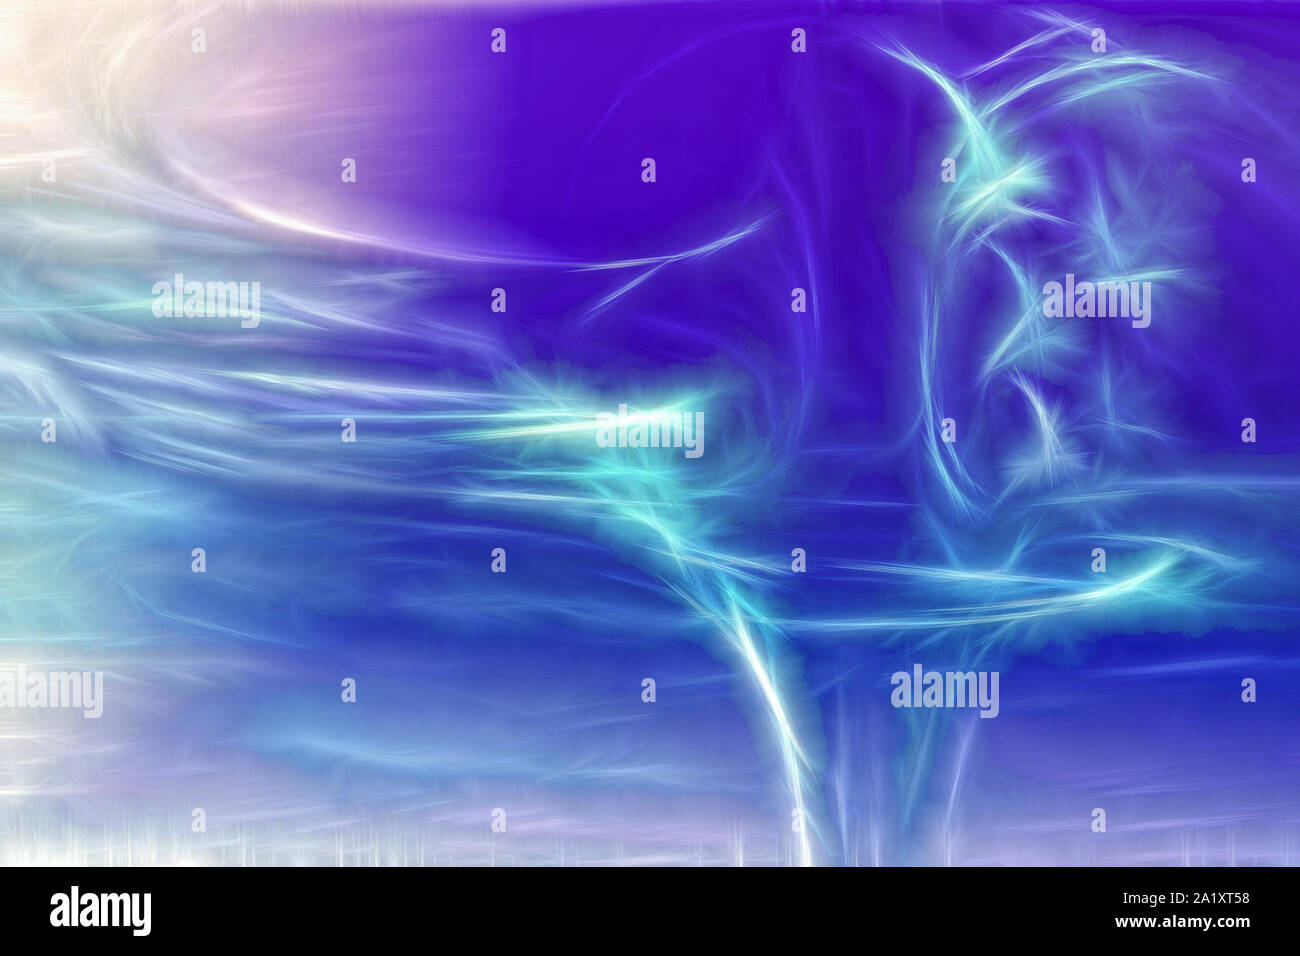 Kurve Abstract Blue Motion funken Hintergrund Stockfoto